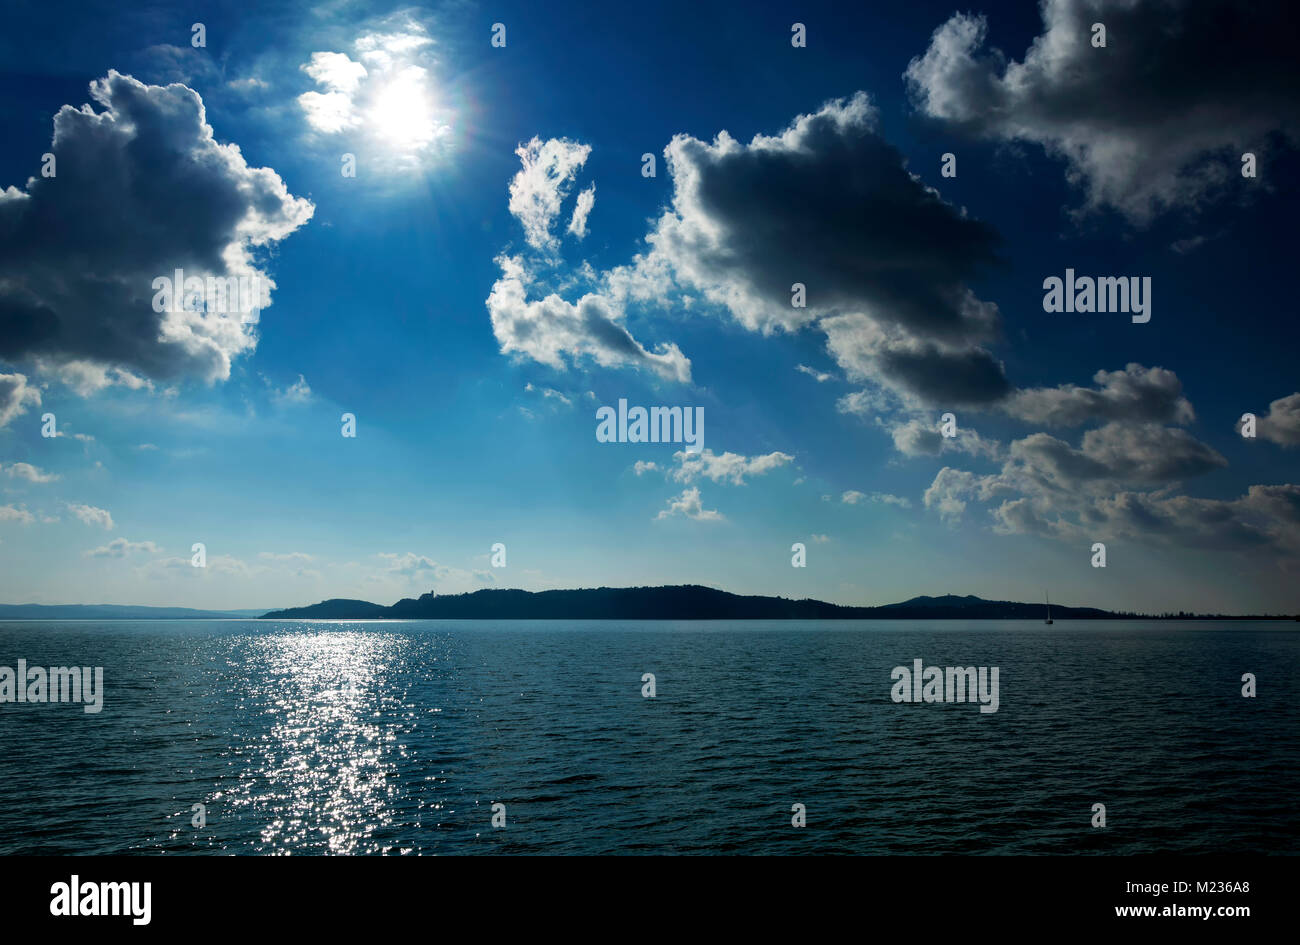 Landscape of Lake Balaton, Hungary Stock Photo